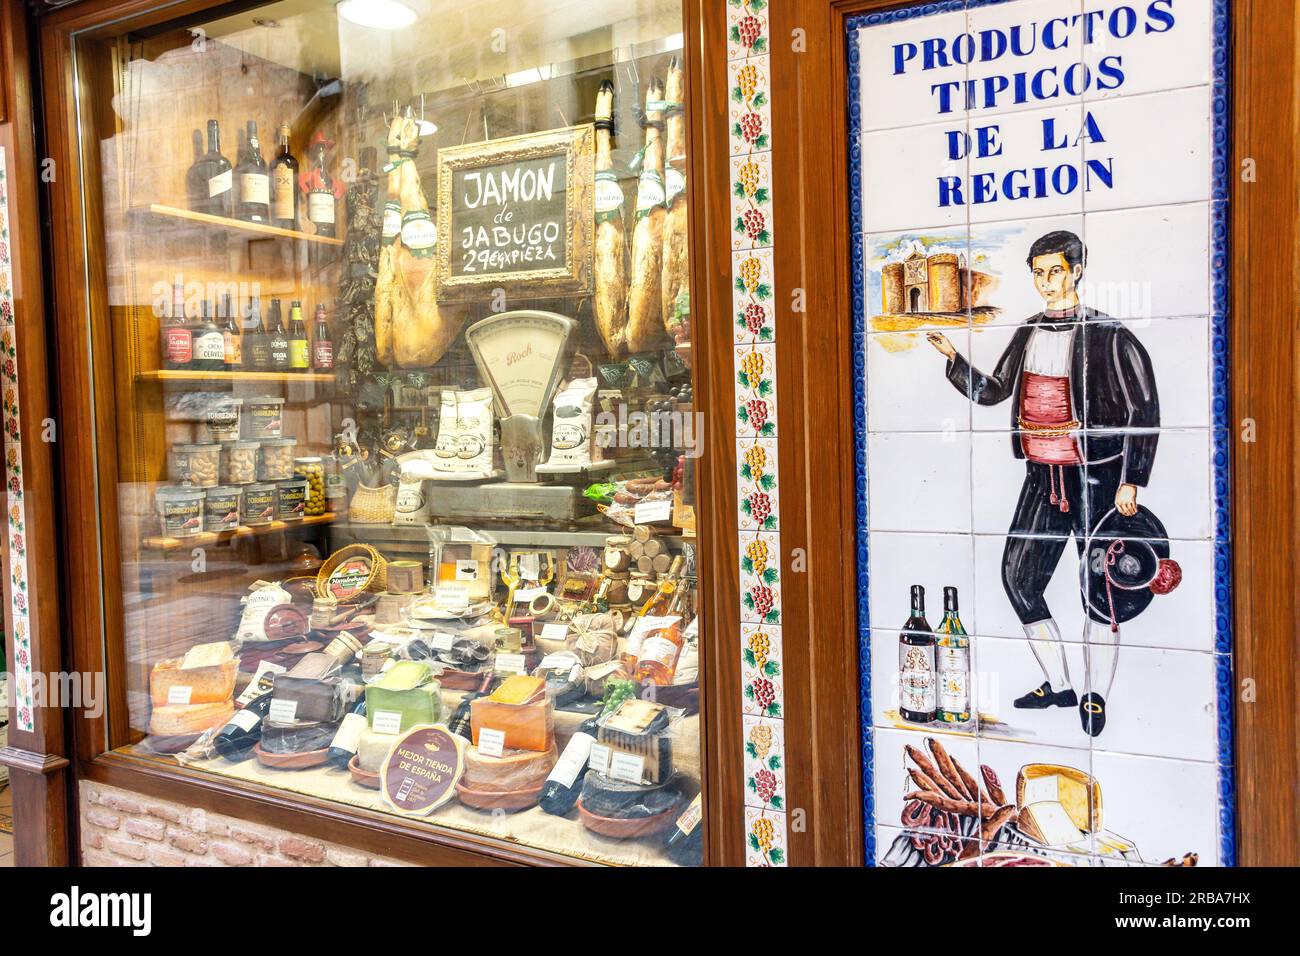 Productos Tipicos de la Region (typical regional foods) shop, Calle Comercio, Toledo, Castilla–La Mancha, Kingdom of Spain Stock Photo